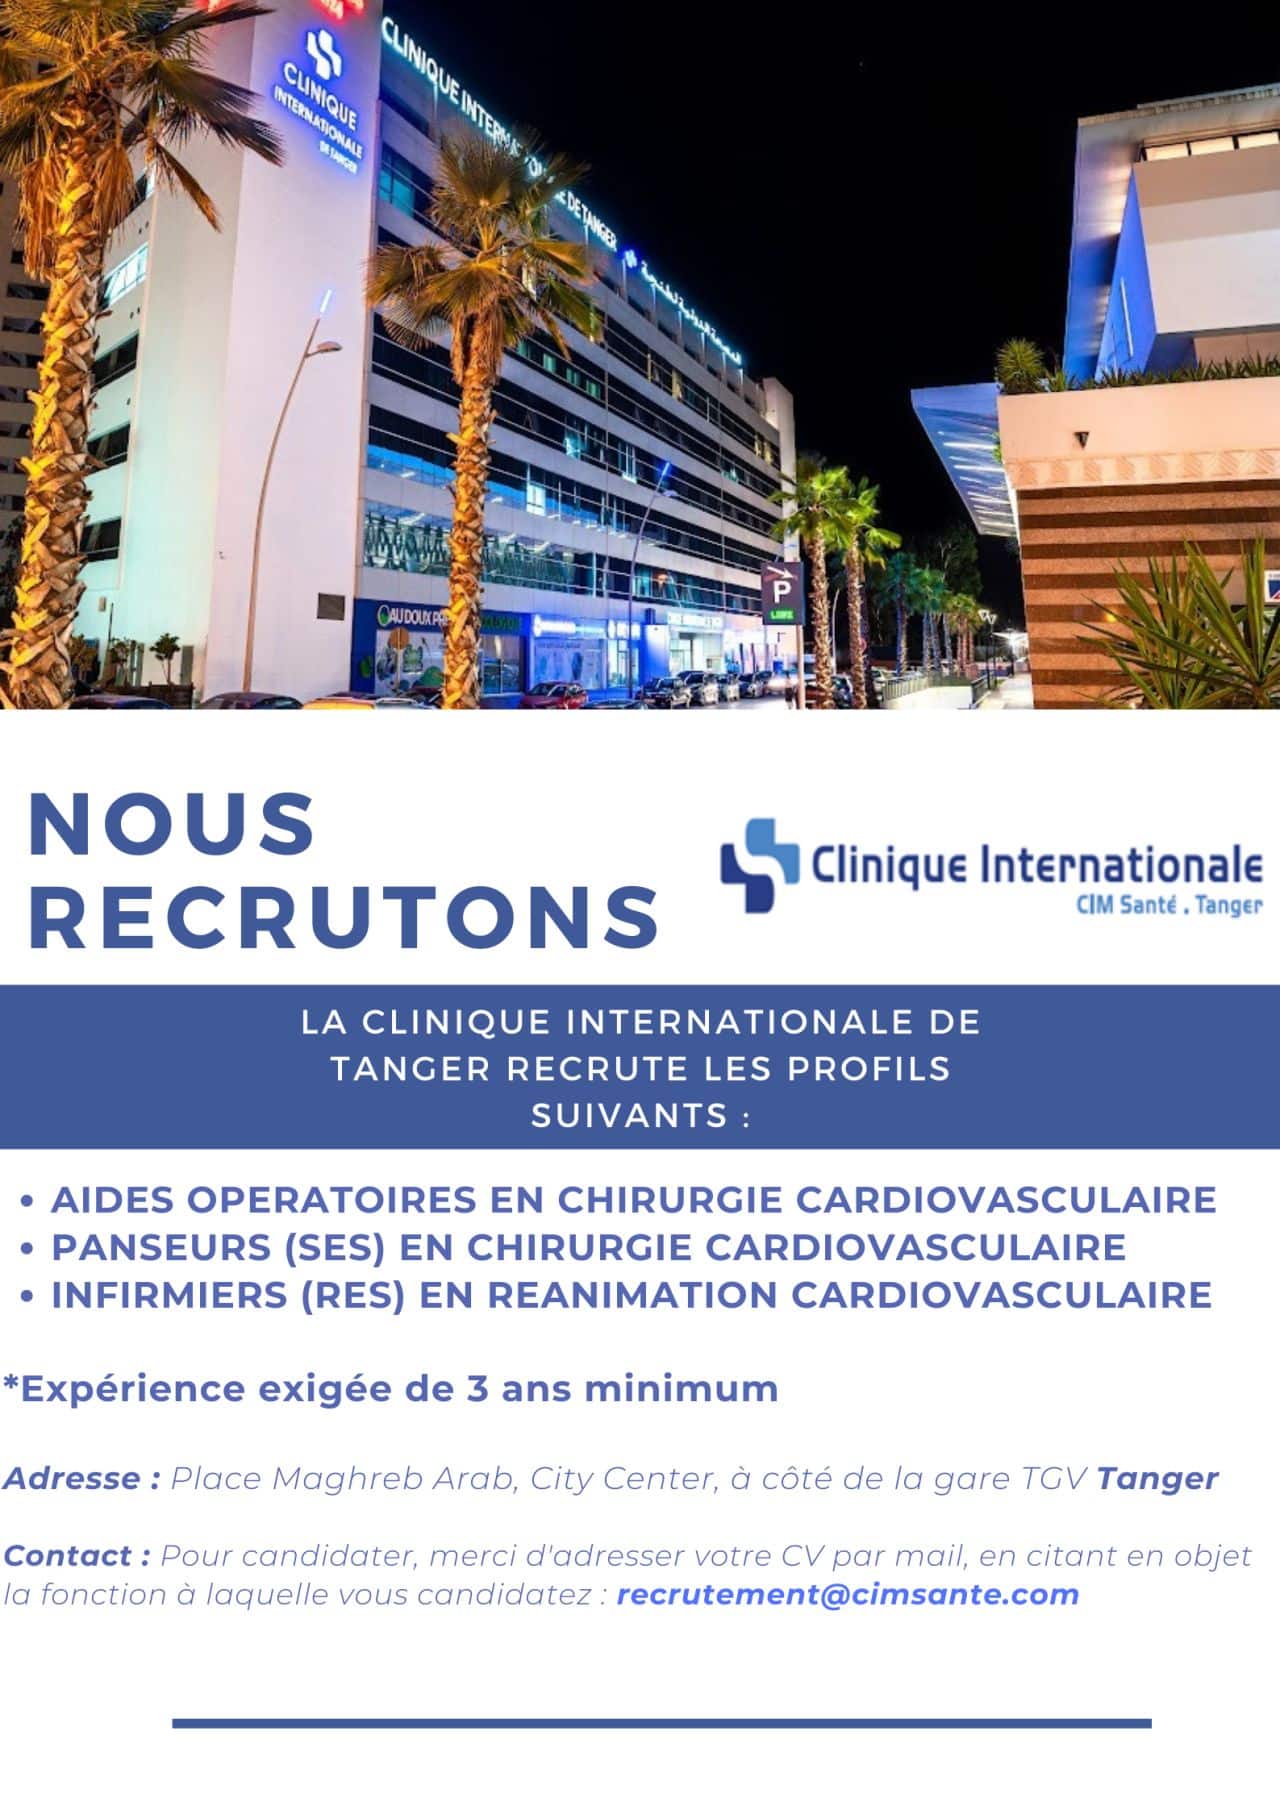 CIM TANGER SANTE Clinique Internationale CIM Santé Tanger recrute plusieurs profils